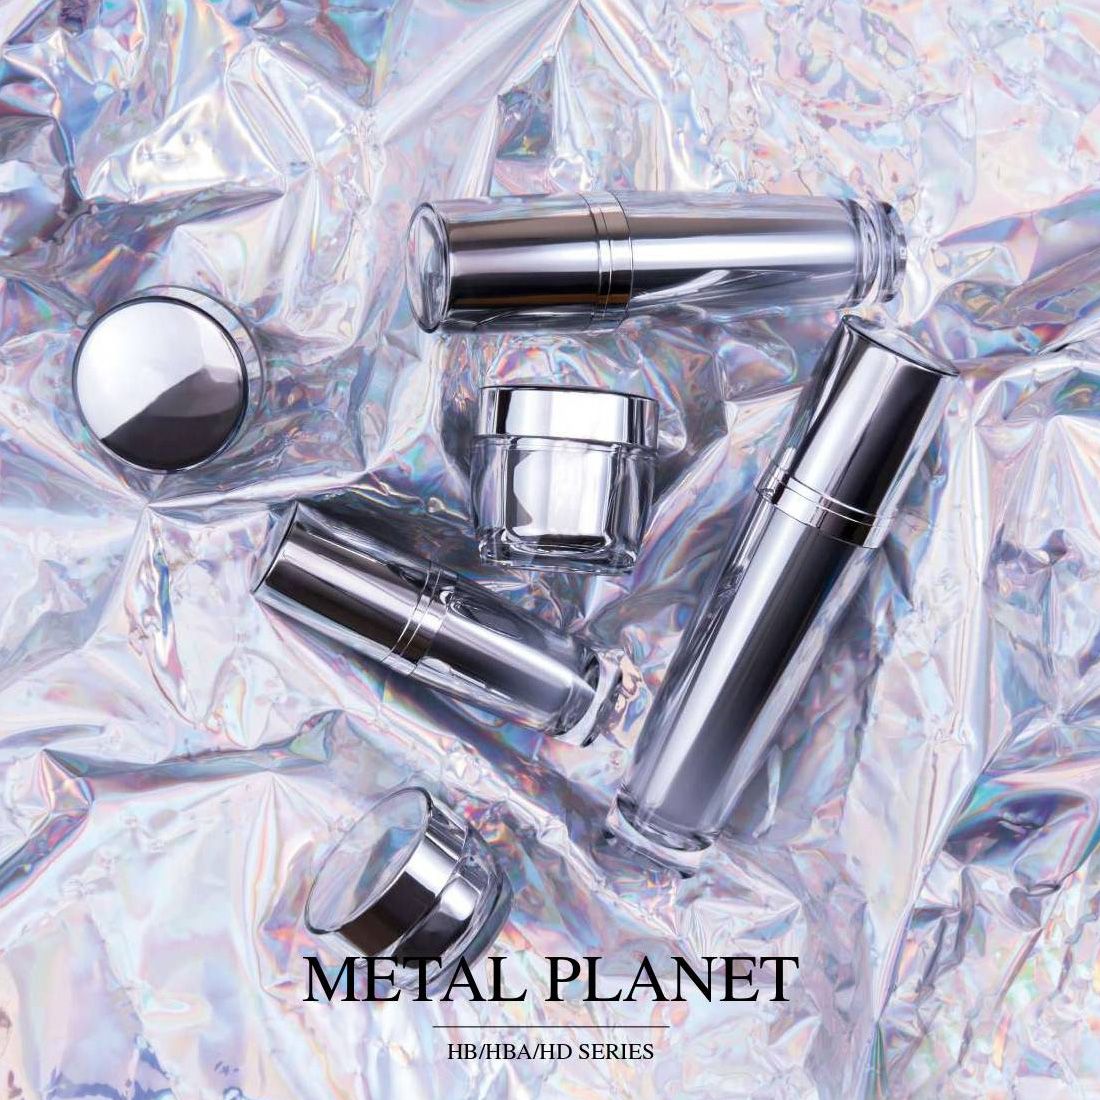 Metal Planet (акриловая роскошная упаковка для косметики и ухода за кожей) - Серия HB/HBA/HD